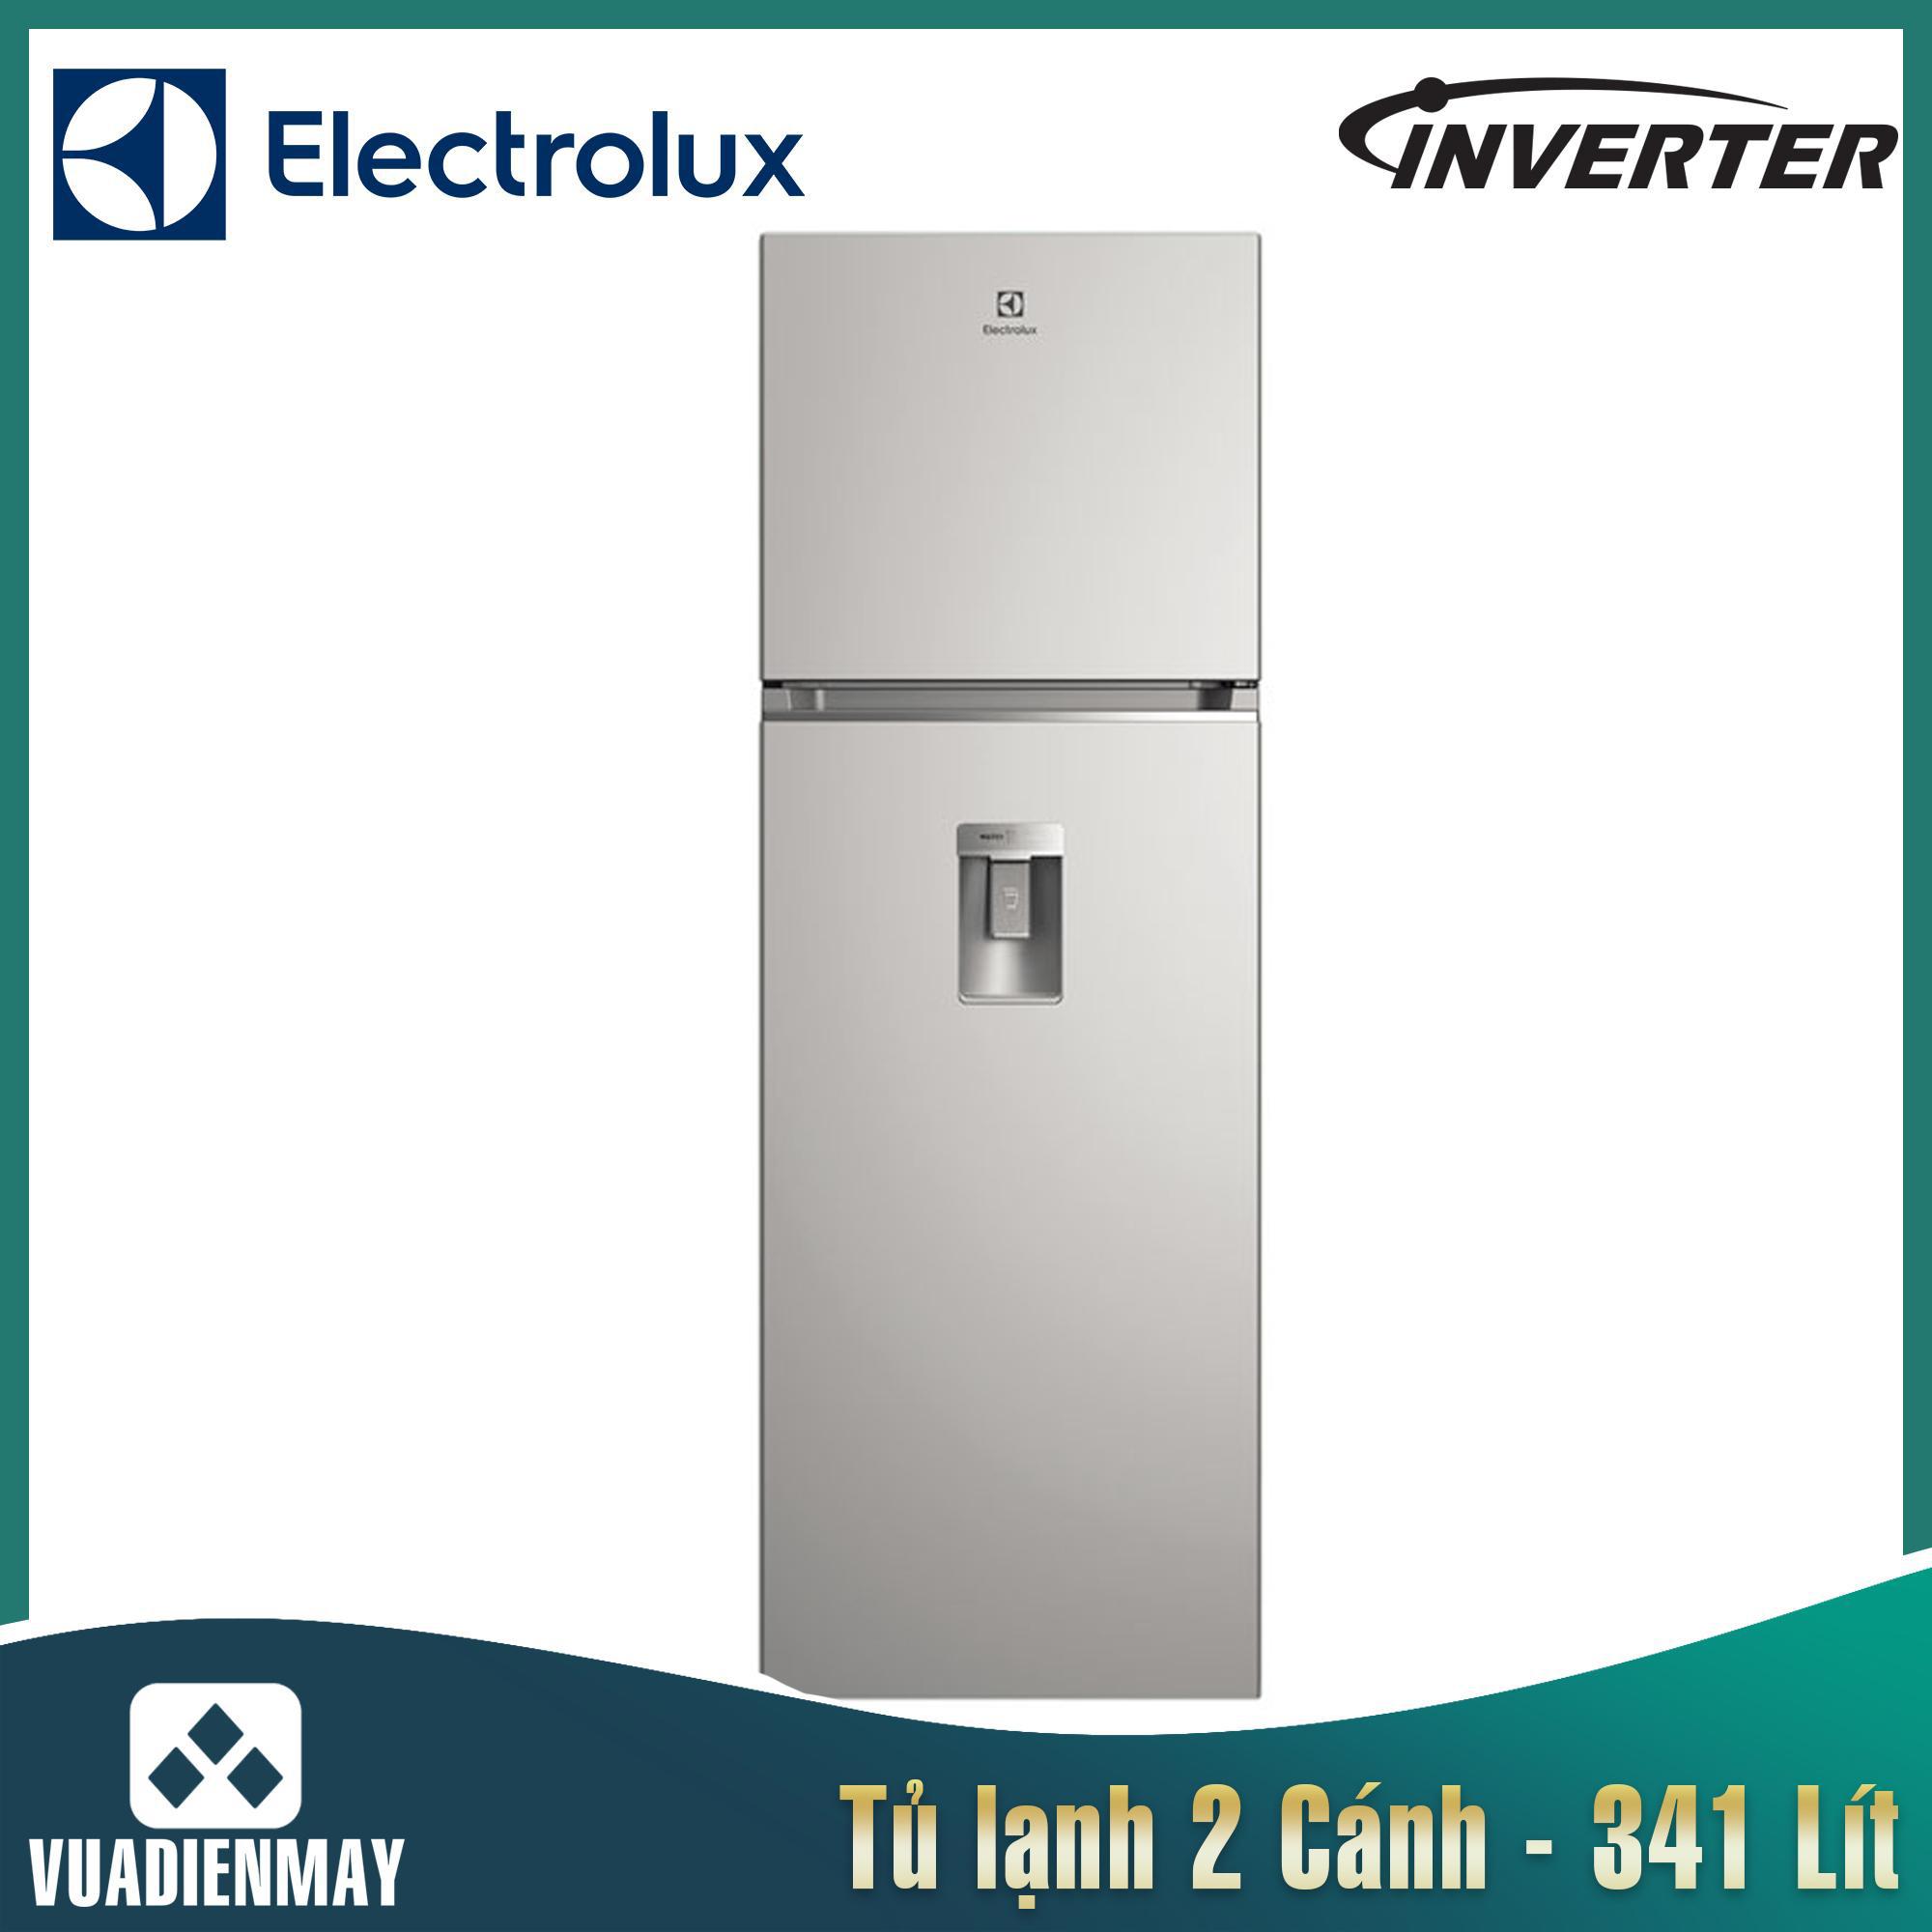 Tủ lạnh Electrolux Inverter 341 lít bạc